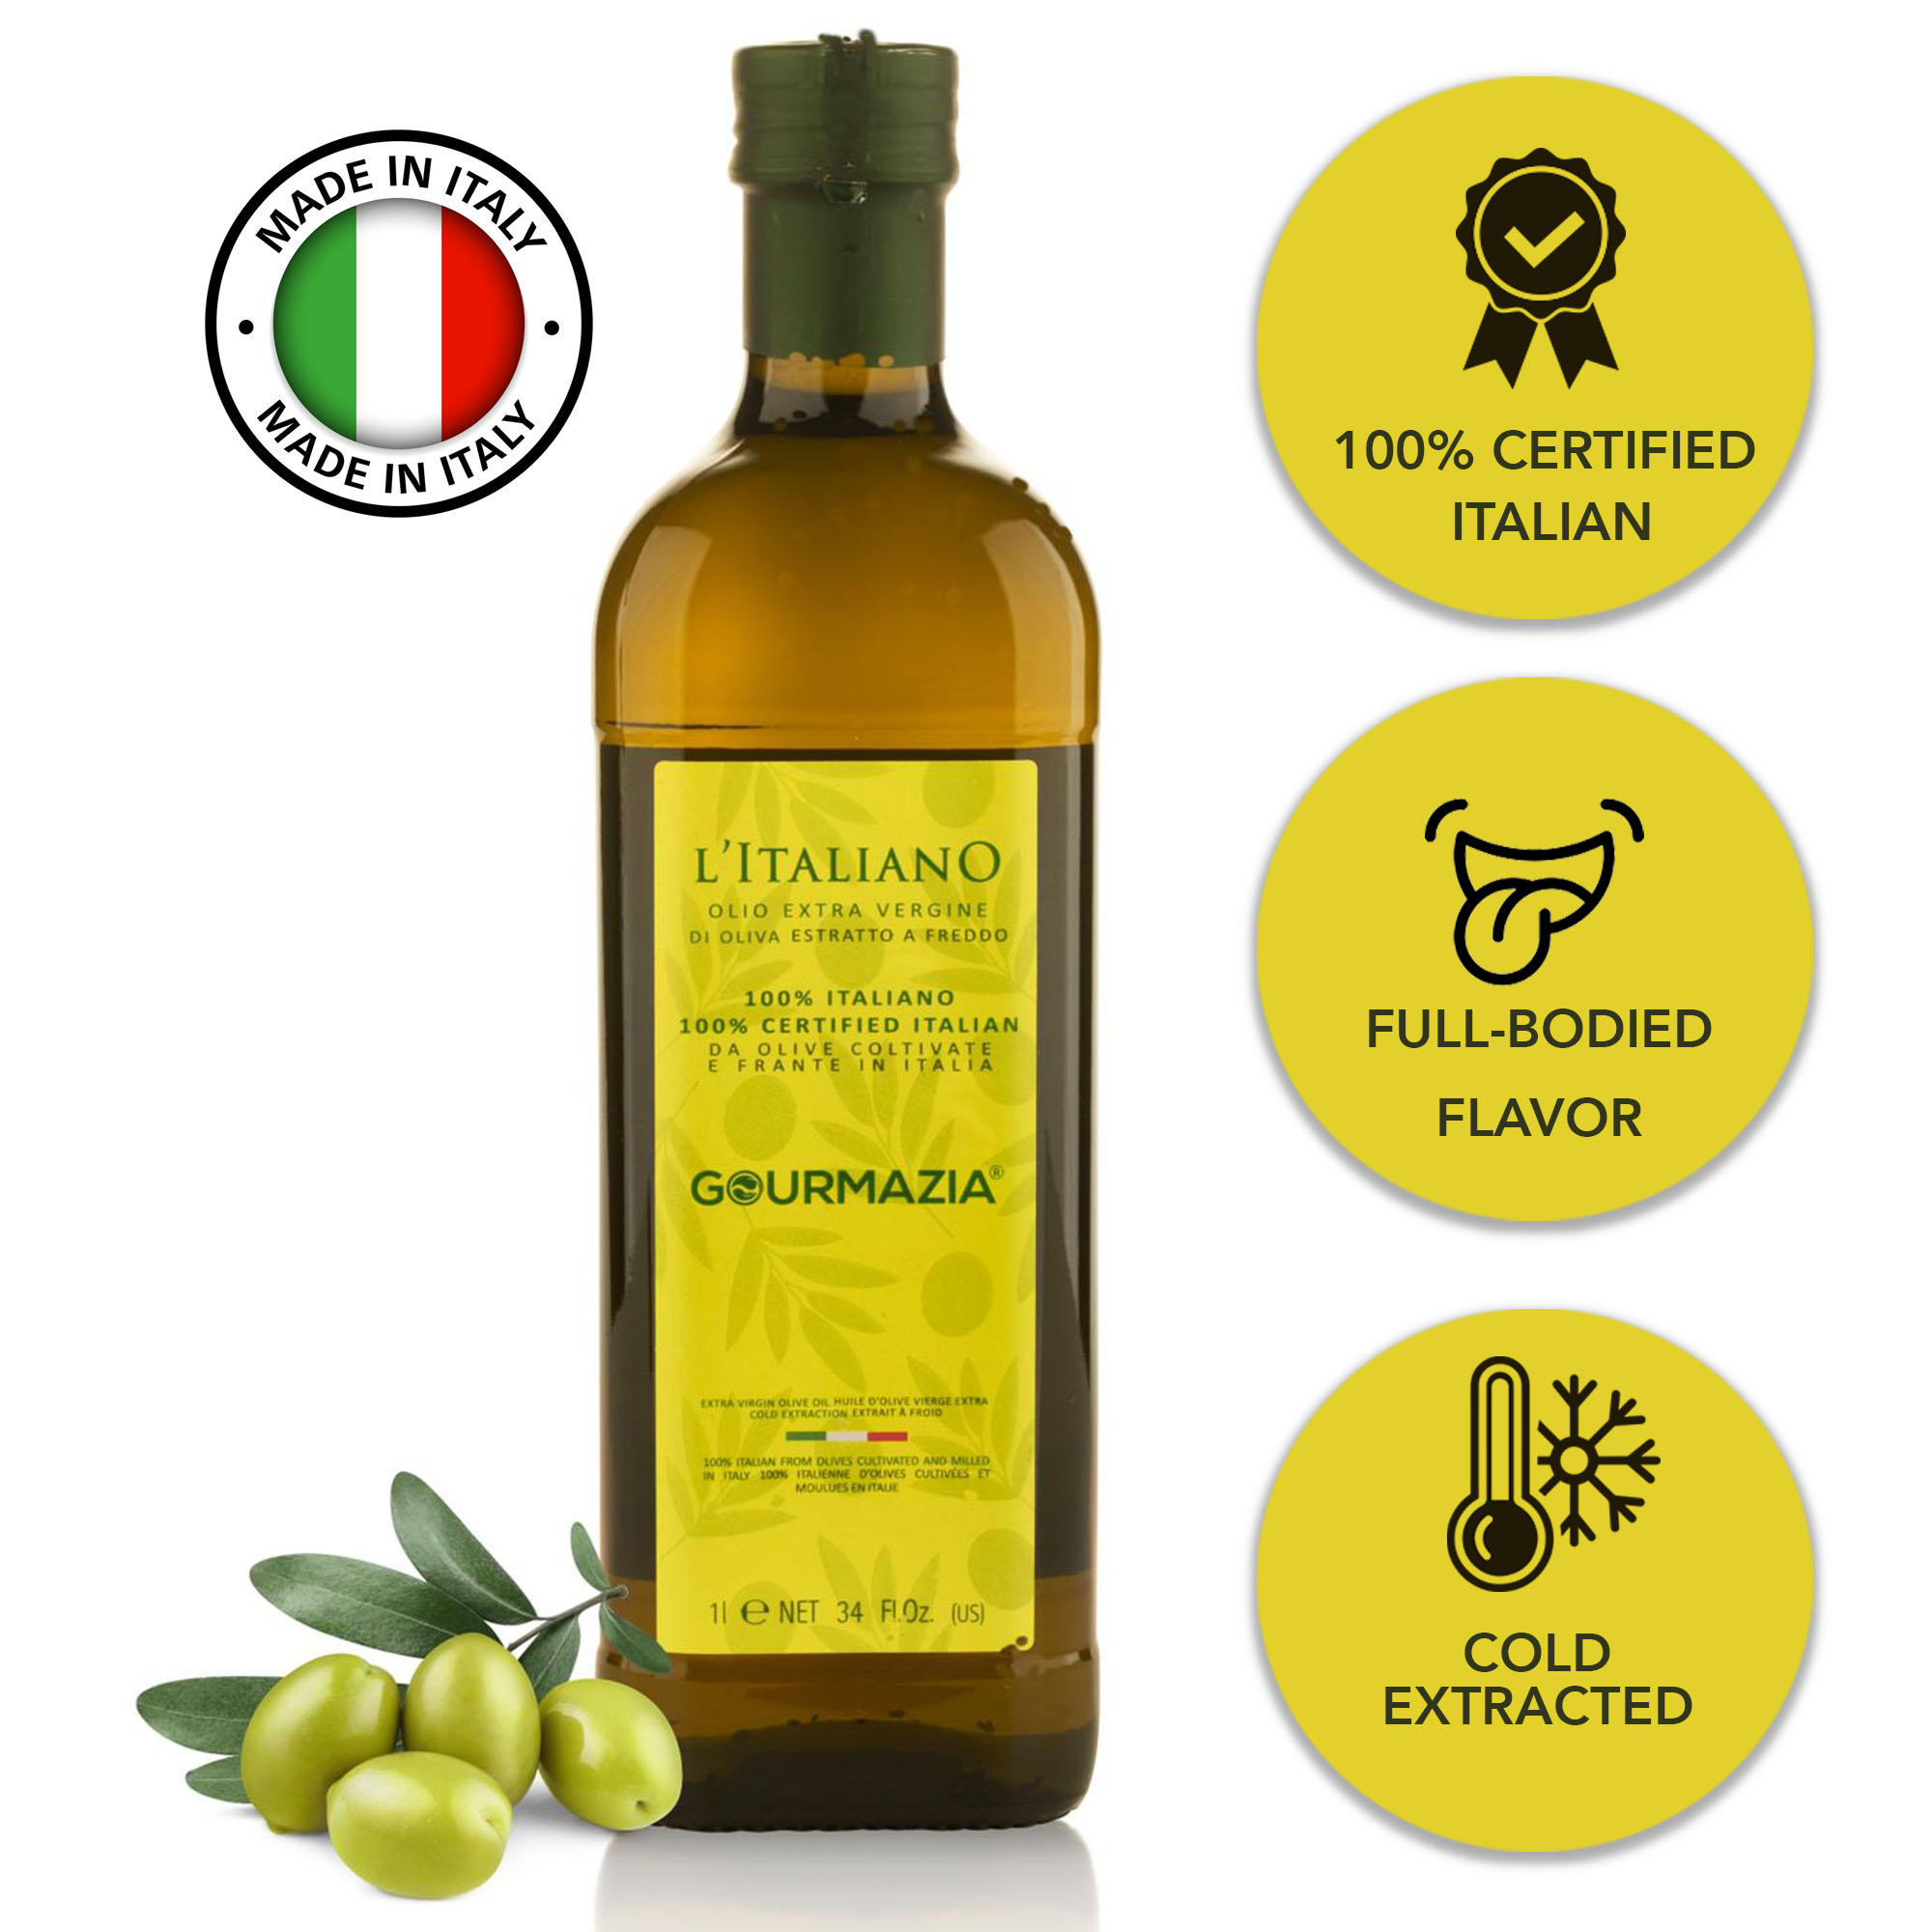 น้ำมันมะกอก เอ็กซ์ตร้า เวอร์จิ้น 1L Extra Virgin Olive Oil น้ำมันมะกอกกิน  อิตาลี 100�rtified Italian